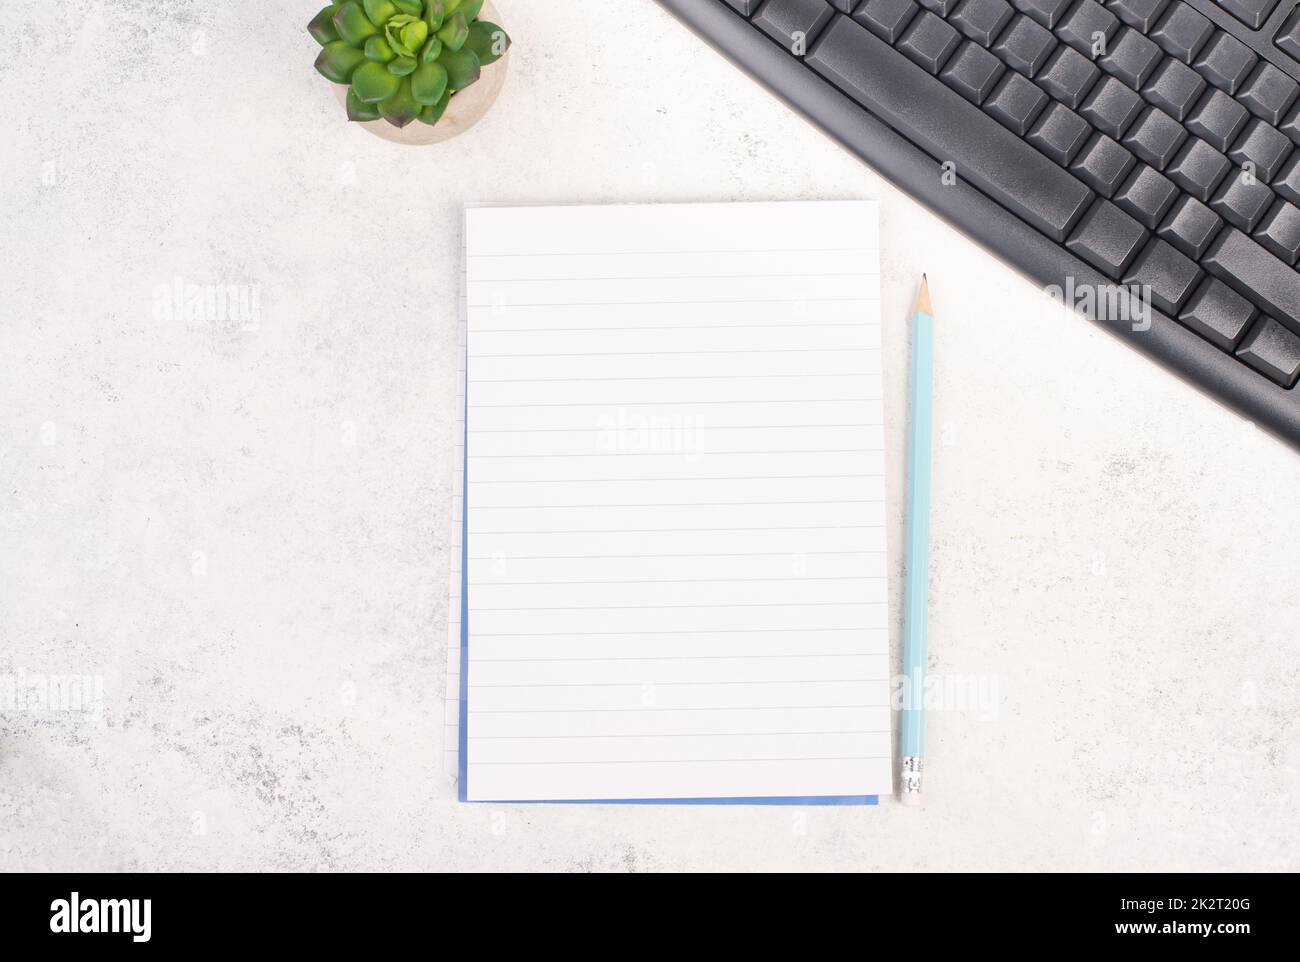 Leeres Papier mit einem Stift, einer Computertastatur und einem Kaktus, strukturierter Hintergrund, Brainstorming für neue Ideen, Schreiben einer Nachricht, eine Pause machen, Schreibtisch im Home Office Stockfoto